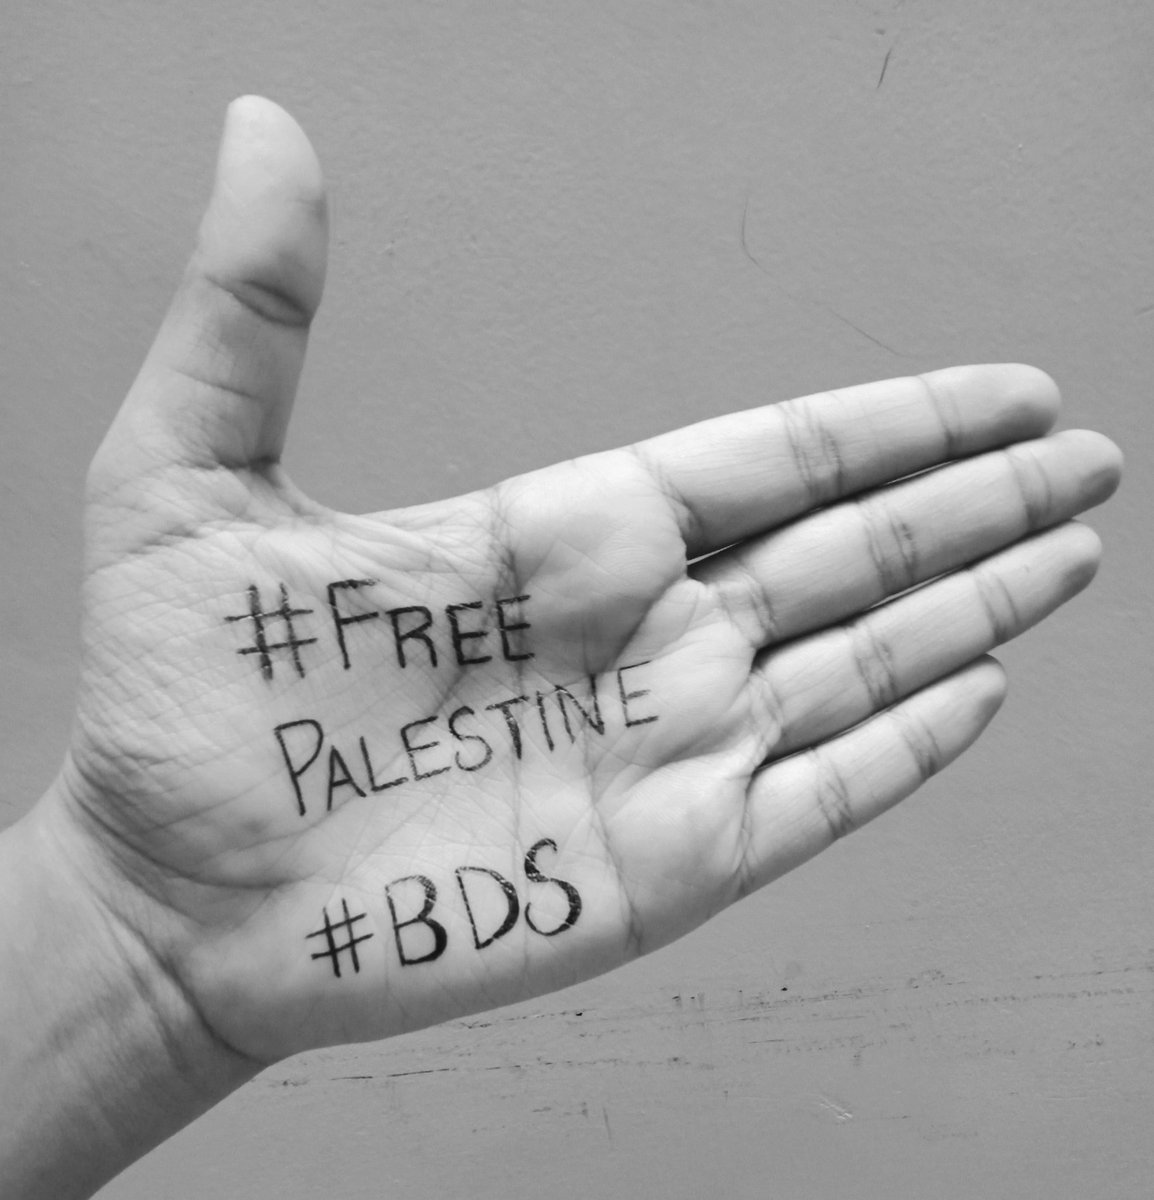 Uluslararası BDS hareketi, İsrail devletinin Filistin topraklarındaki sömürgeci ve işgalci varlığına karşı #inourHands etiketiyle kampanya başlattı. Takipçilerimizi Filistin ile dayanışma mesajlarını ellerine yazıp  #bizimelimizde ve #InOurHands etiketiyle paylaşmaya çağırıyoruz.